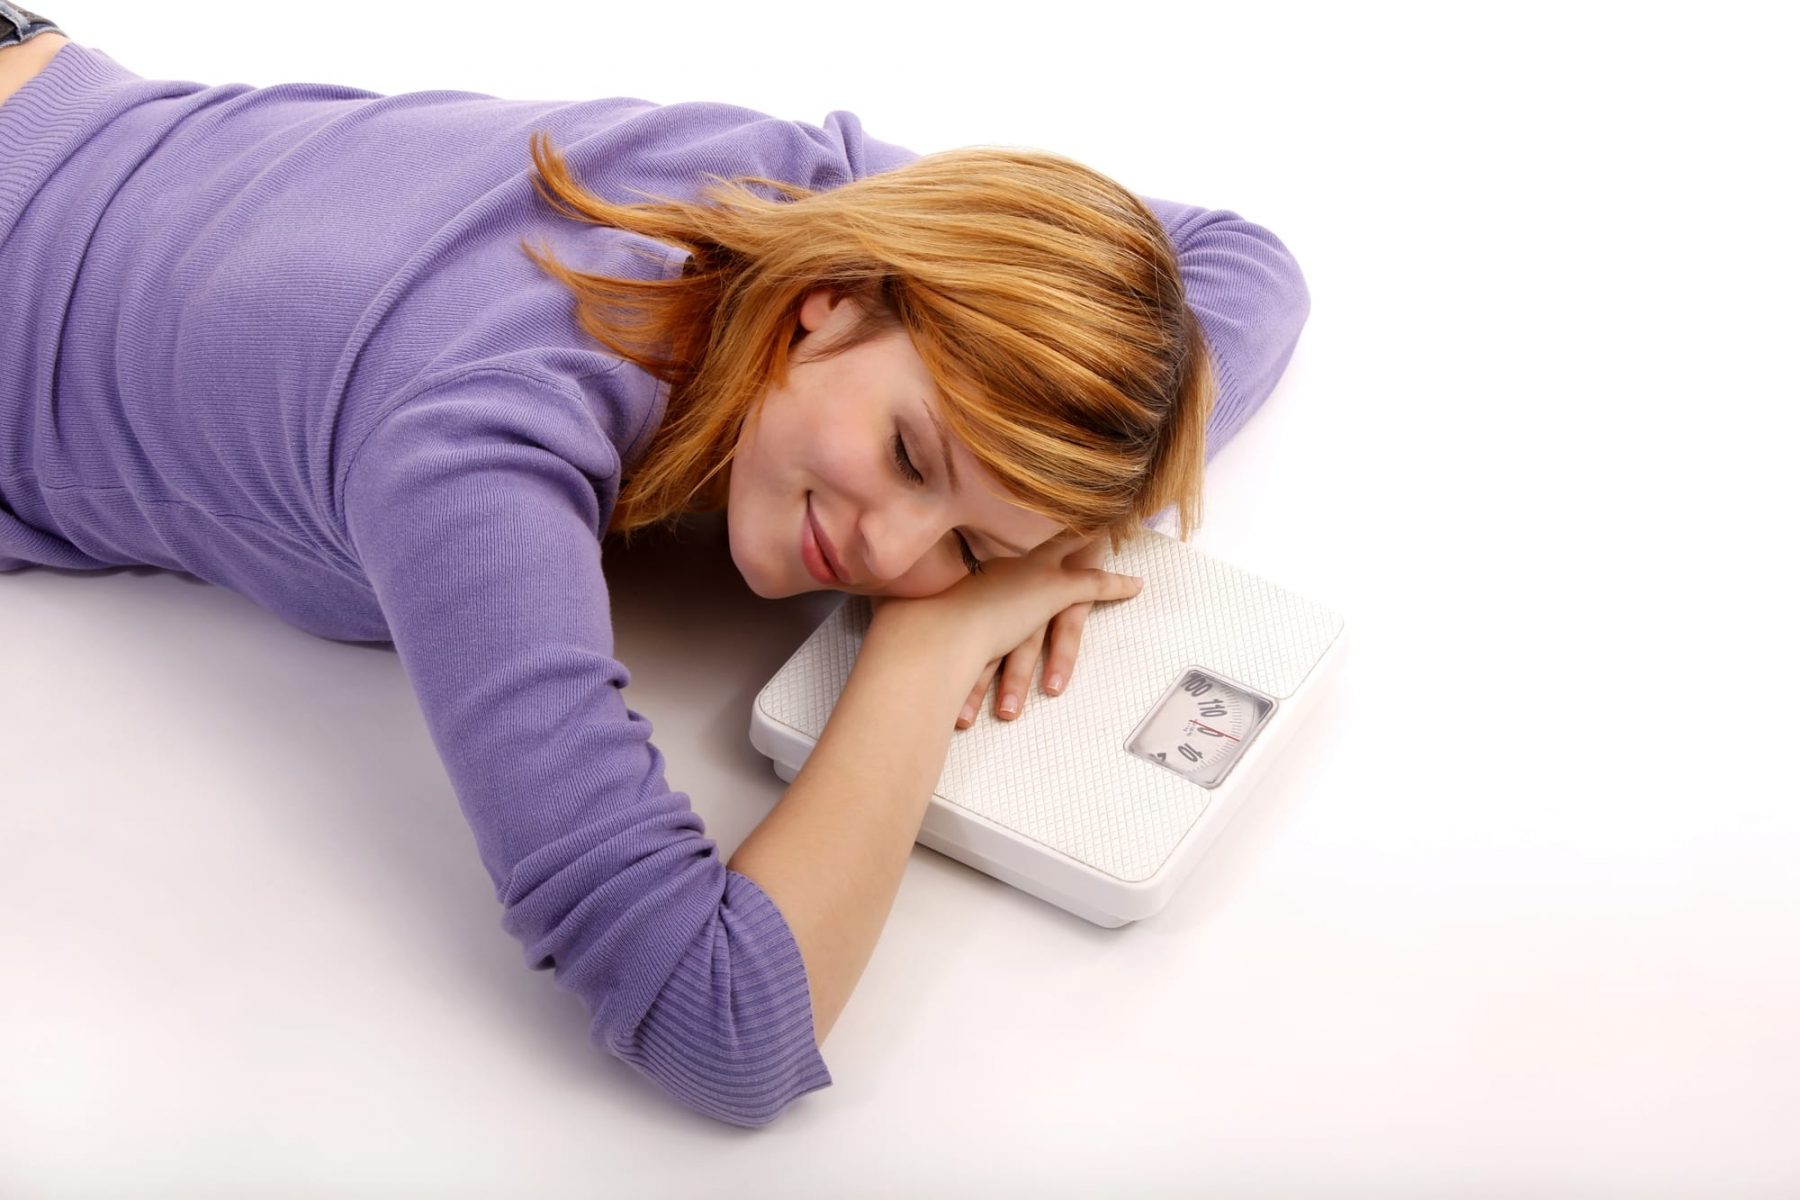 Προβιοτικά: πώς μπορούν να σας βοηθήσουν να χάσετε το βάρος και λίπος – B by Nadia Boule